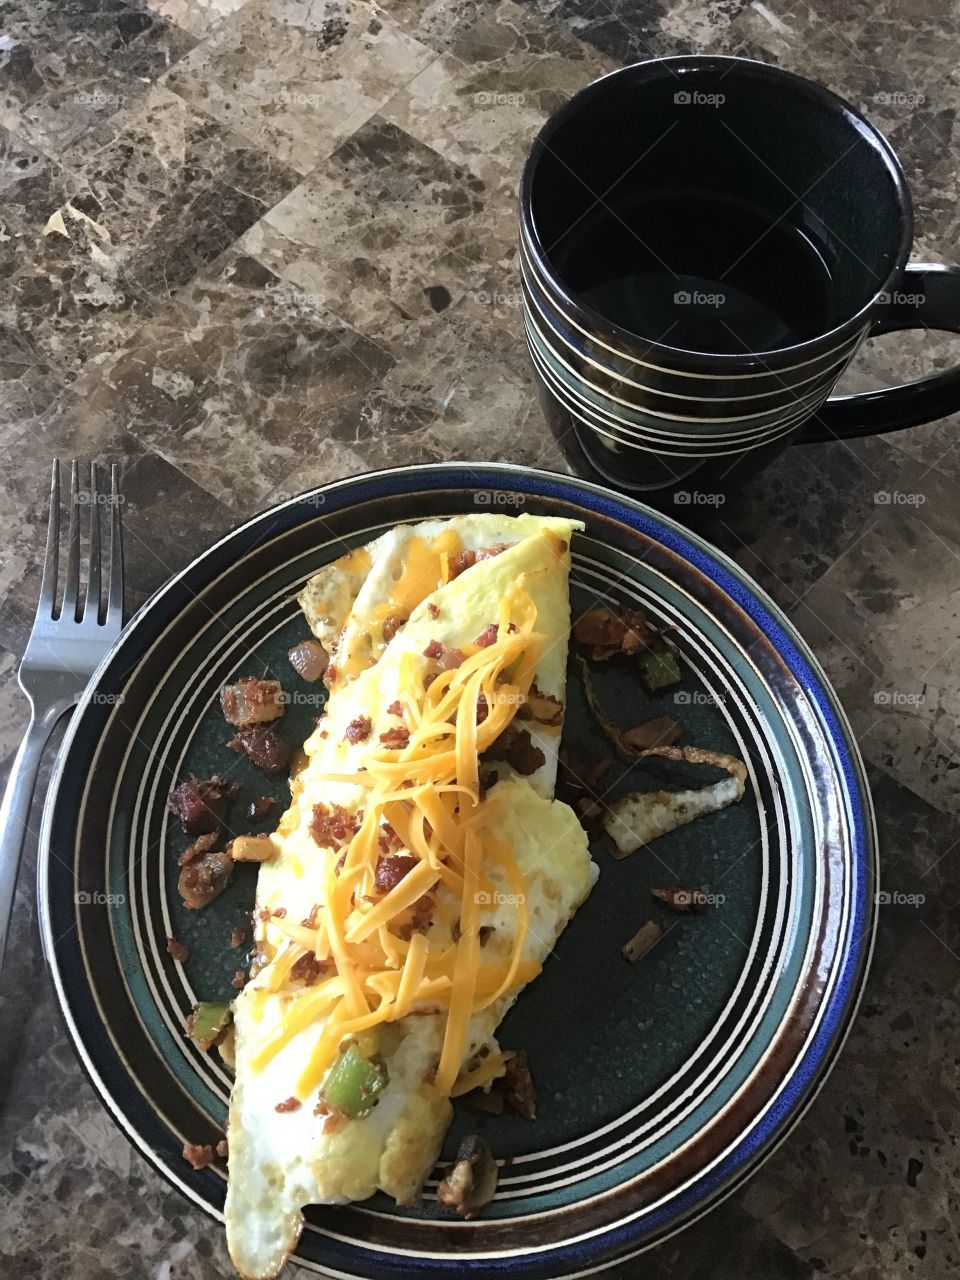 Homemade omelette for brunch